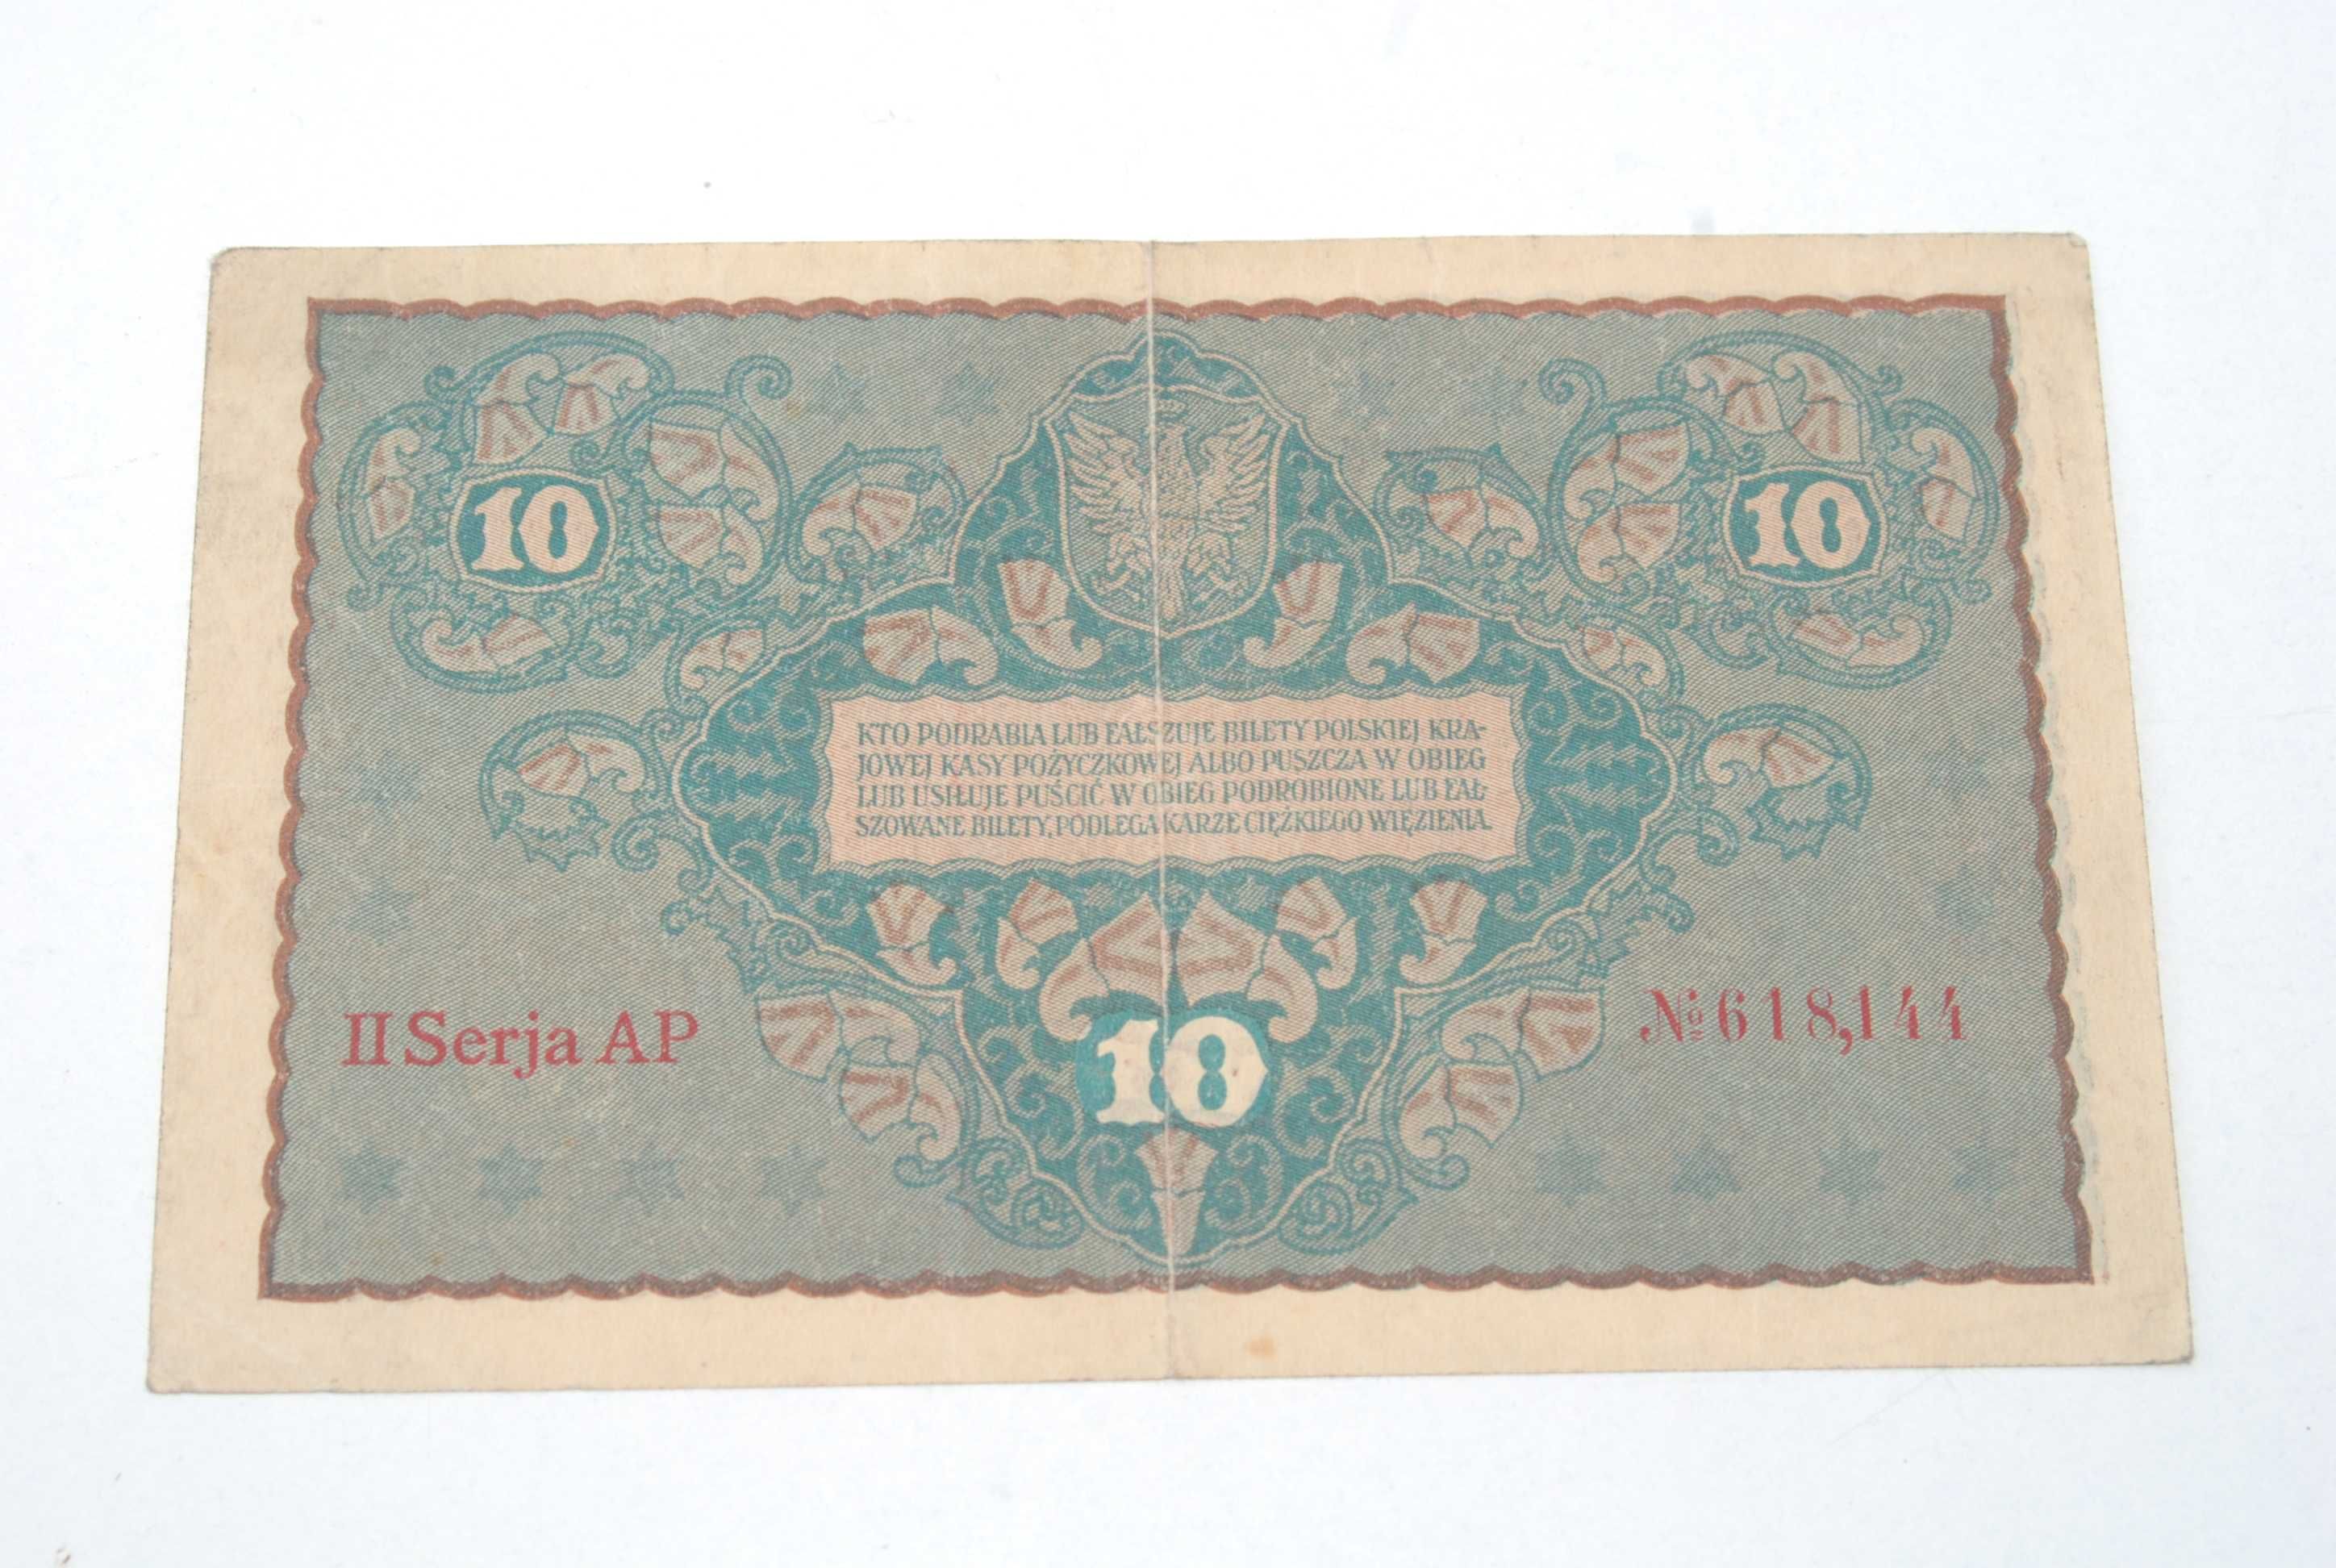 Stary banknot 10 marek Polskich 23 Sierpnia 1919 II ser antyk